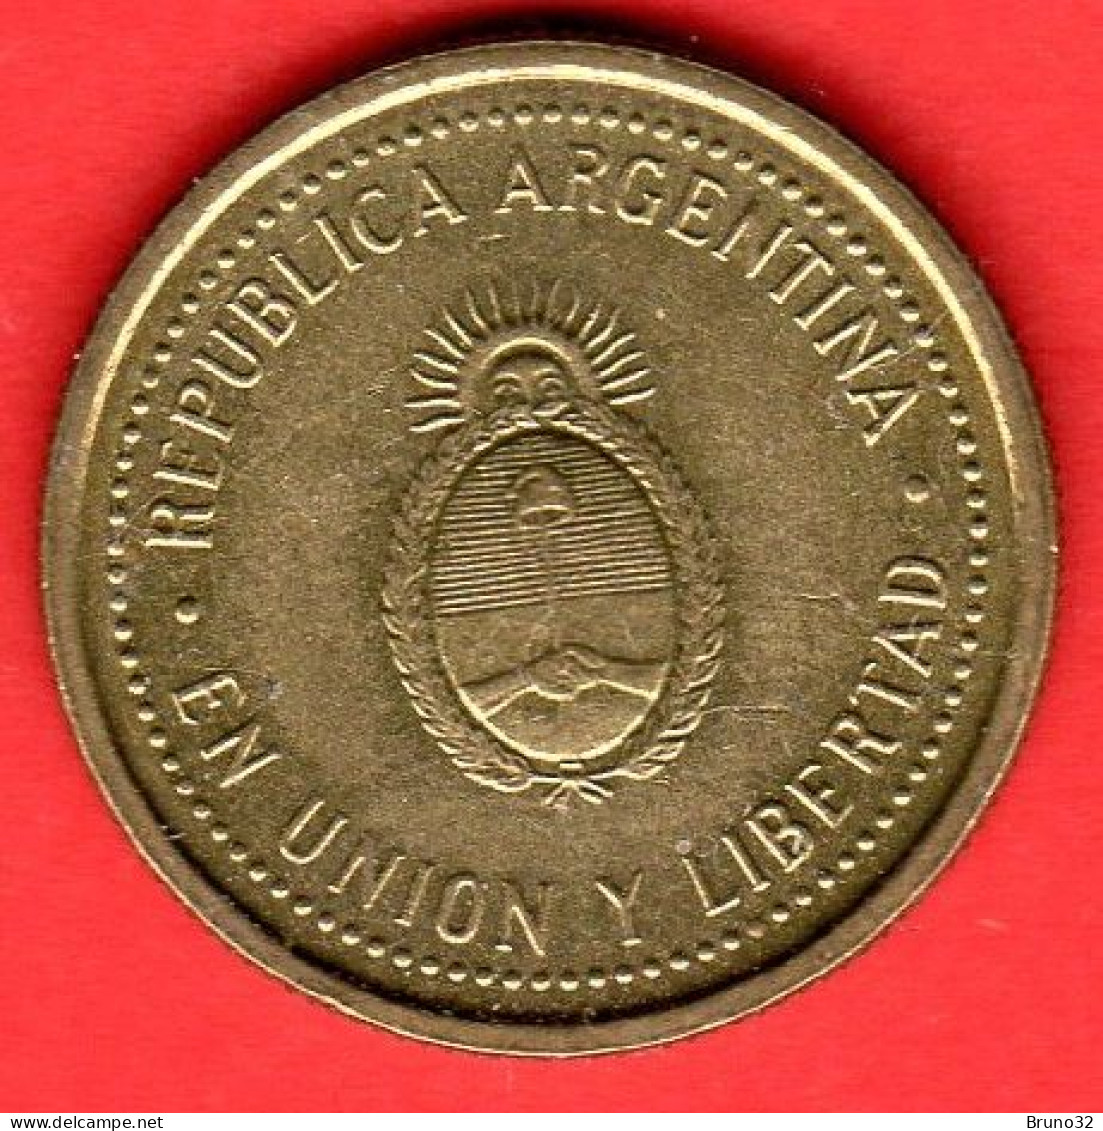 ARGENTINA - 1993 - 10 Centavos - QFDC/aUNC - Come Da Foto - Argentine